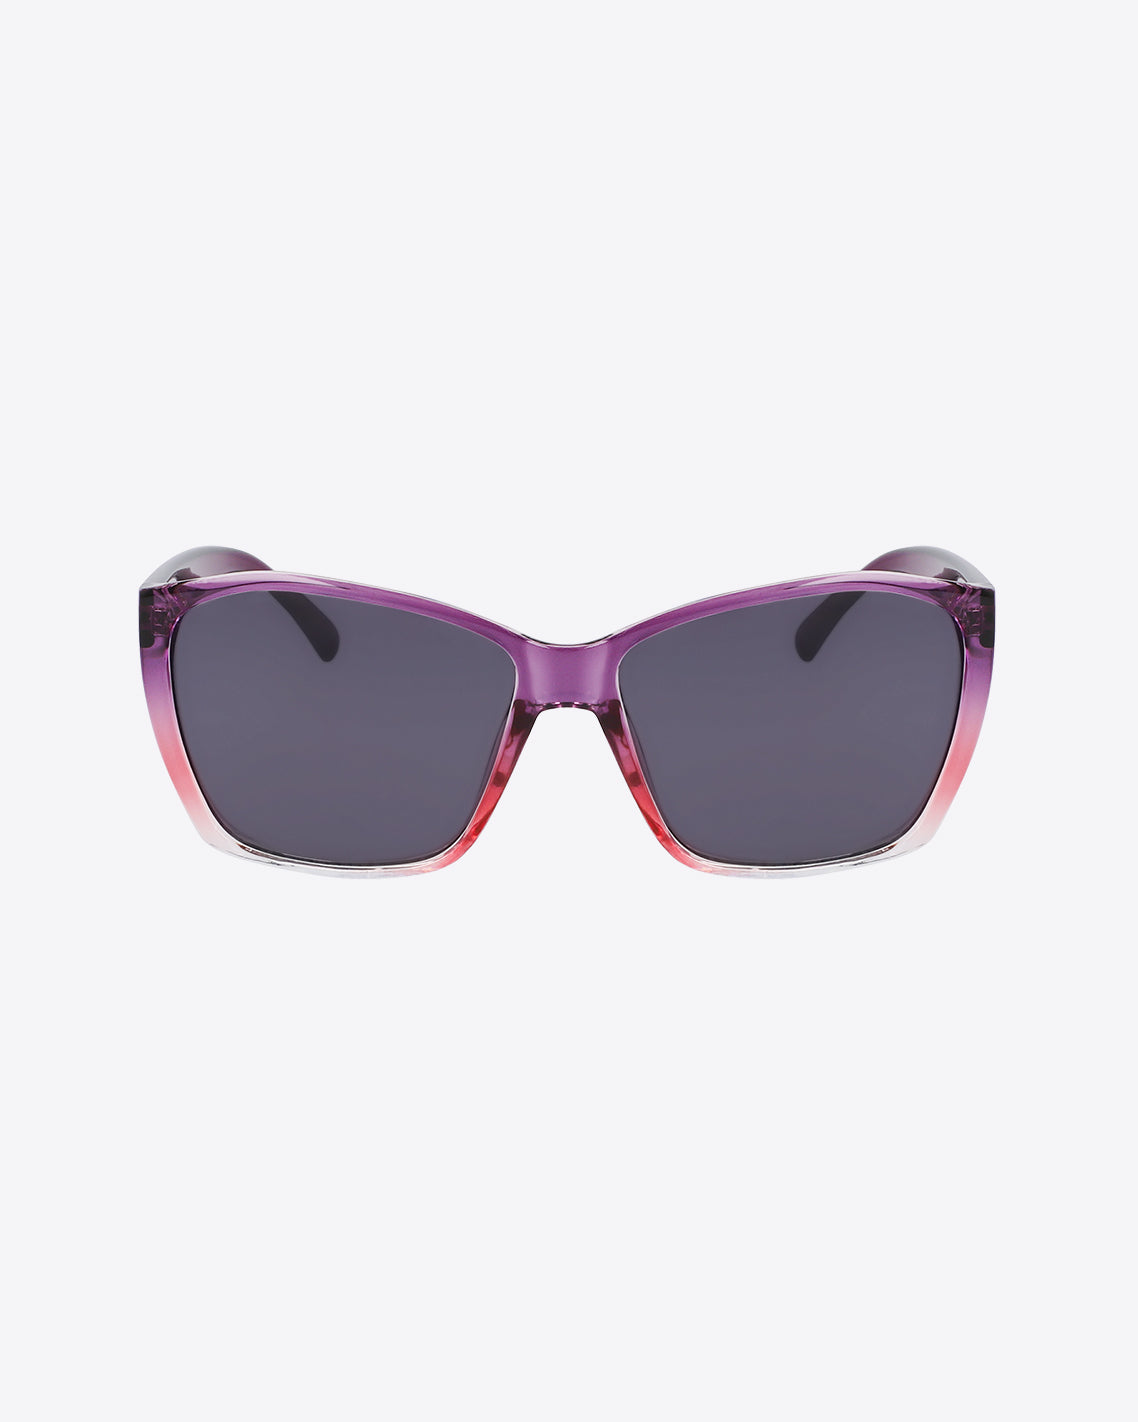 Lea Sunglasses in Plum Gradient